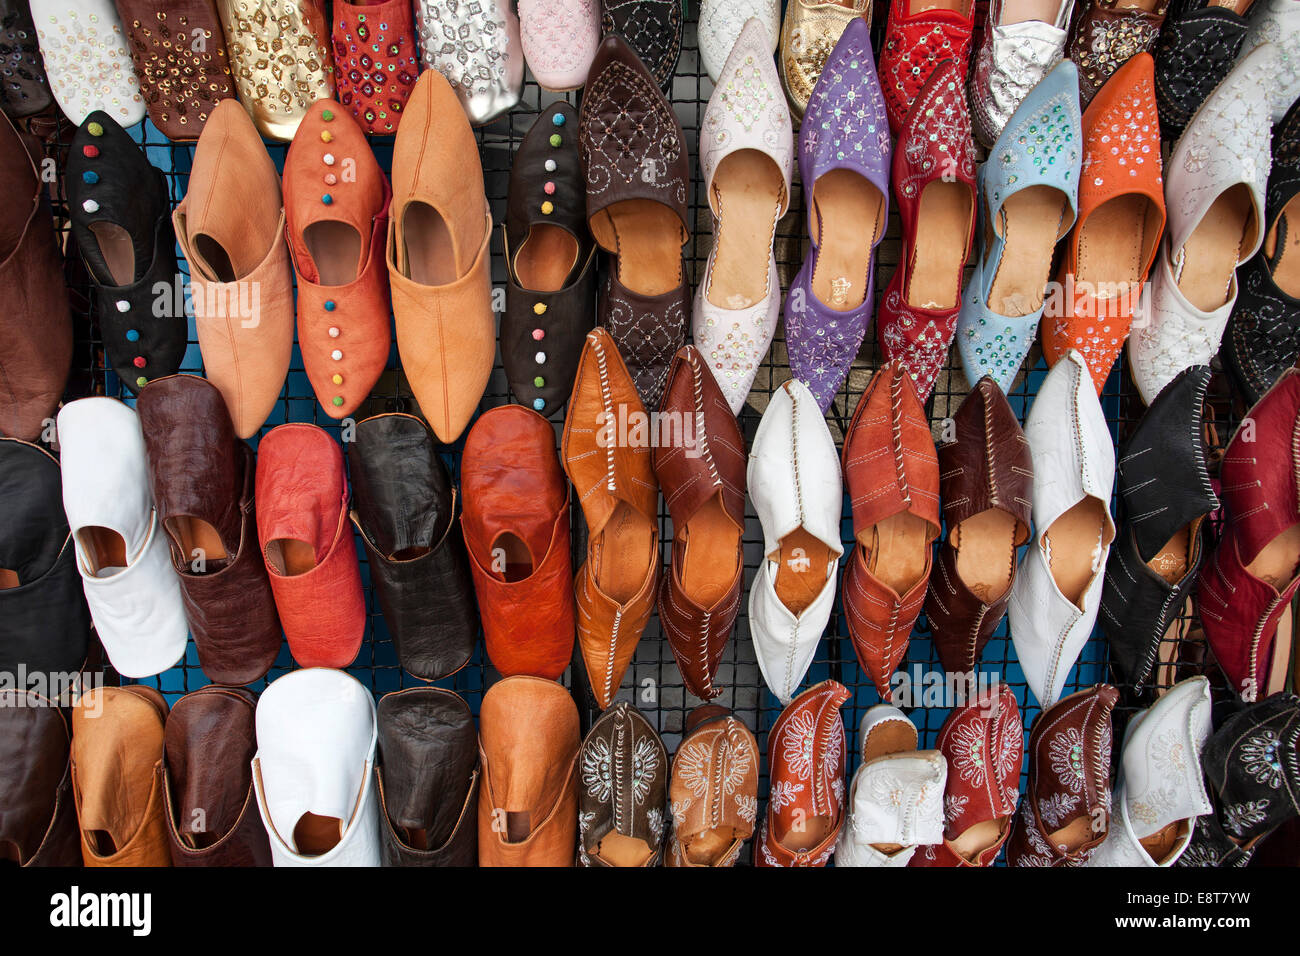 Typical Tunisian shoes, market, bazaar, Djerba, Tunisia Stock Photo